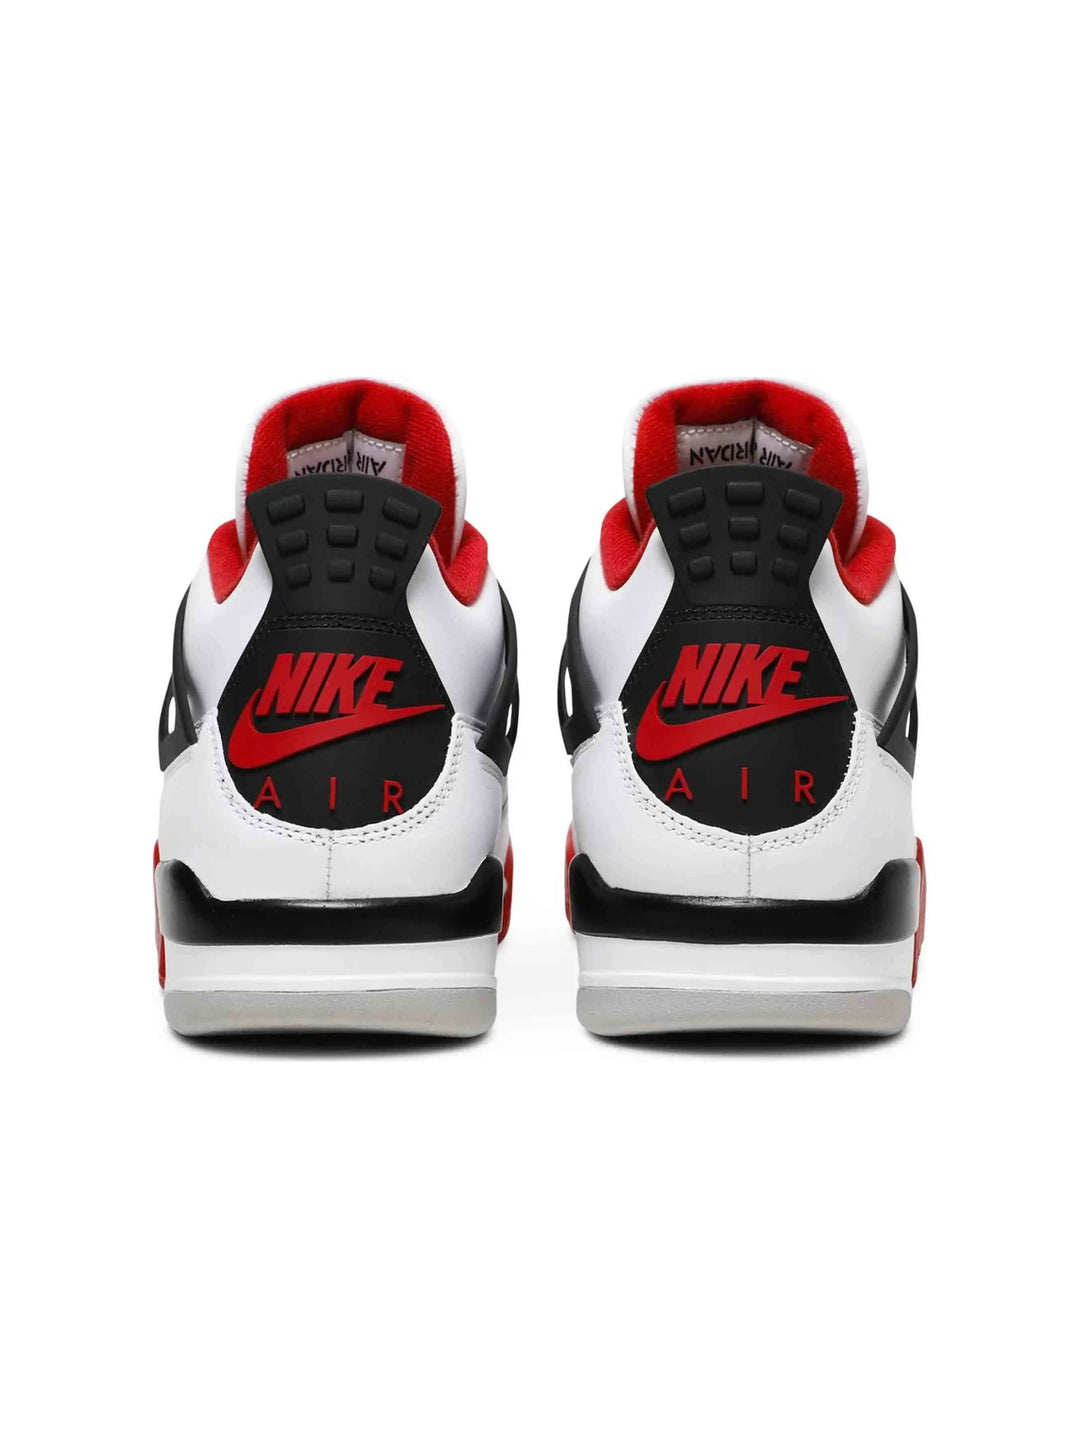 Nike Air Jordan 4 Retro Fire Red (2020) Prior